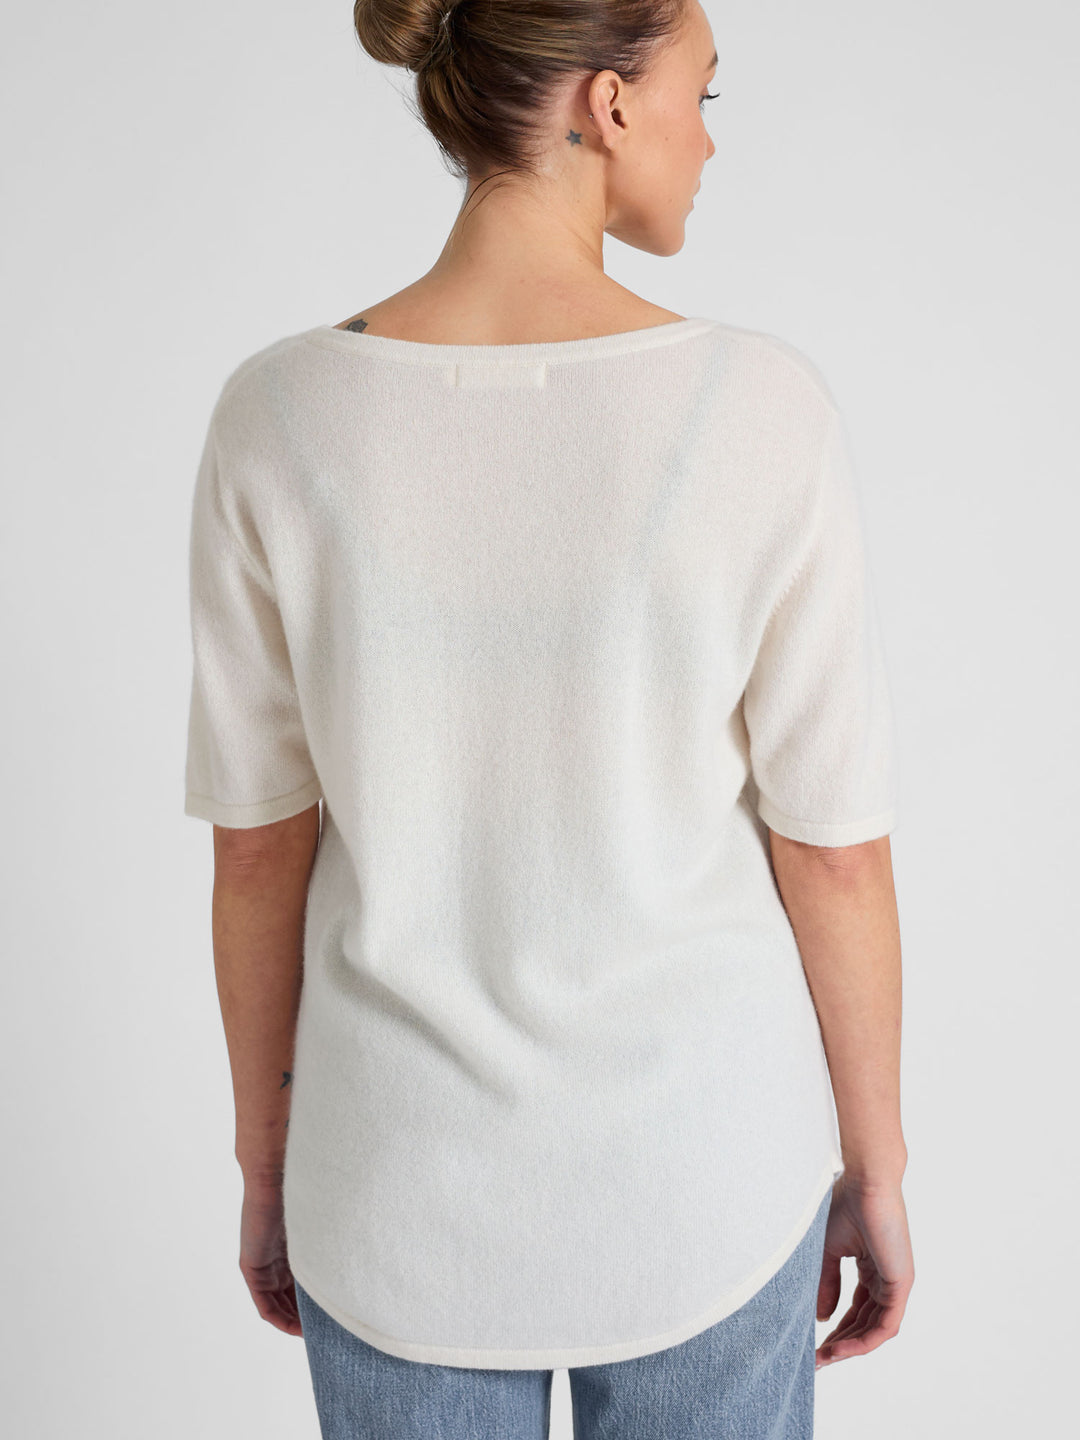 T-skjorte "Iben" i 100% ren kashmir. Norsk design fra Kashmina. Farge: Hvit.